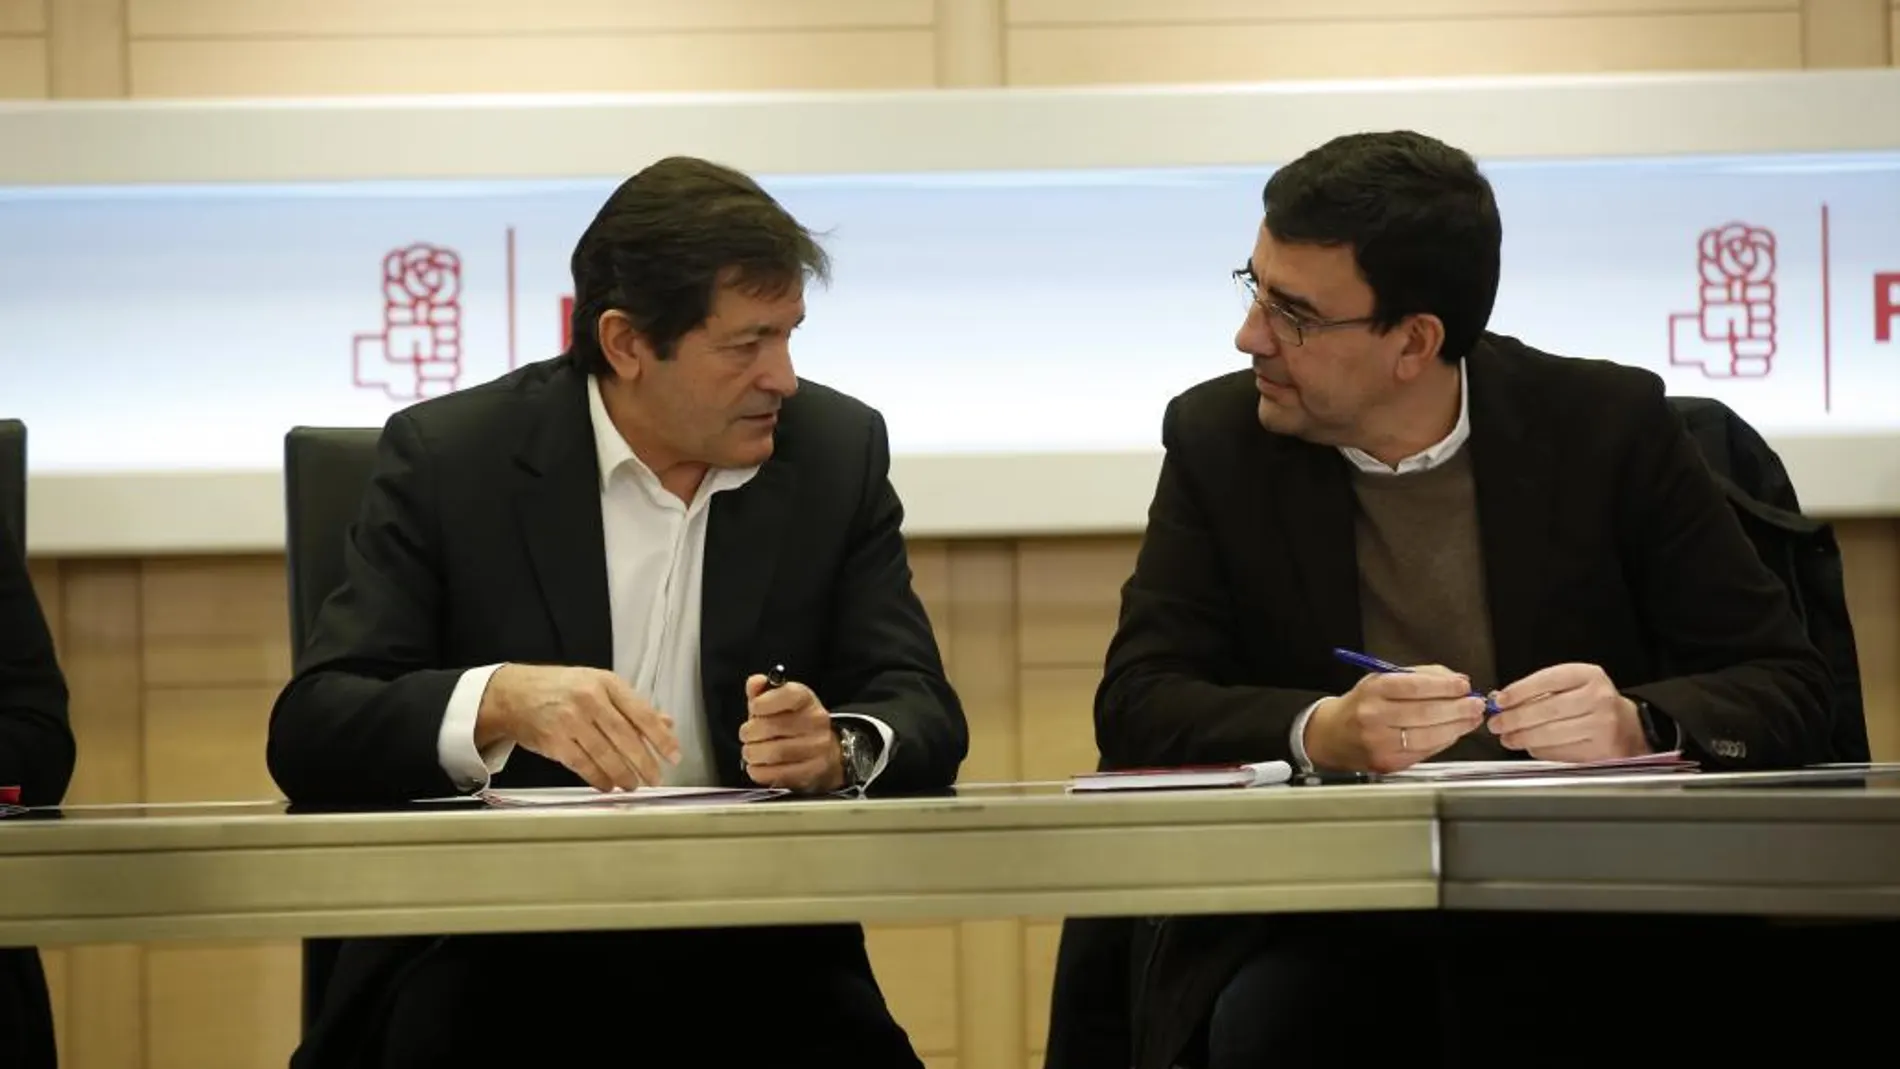 El presidente de la gestora, Javier Fernández, junto al portavoz, Mario Jiménez, ayer durante la reunión de la dirección interina en Ferraz